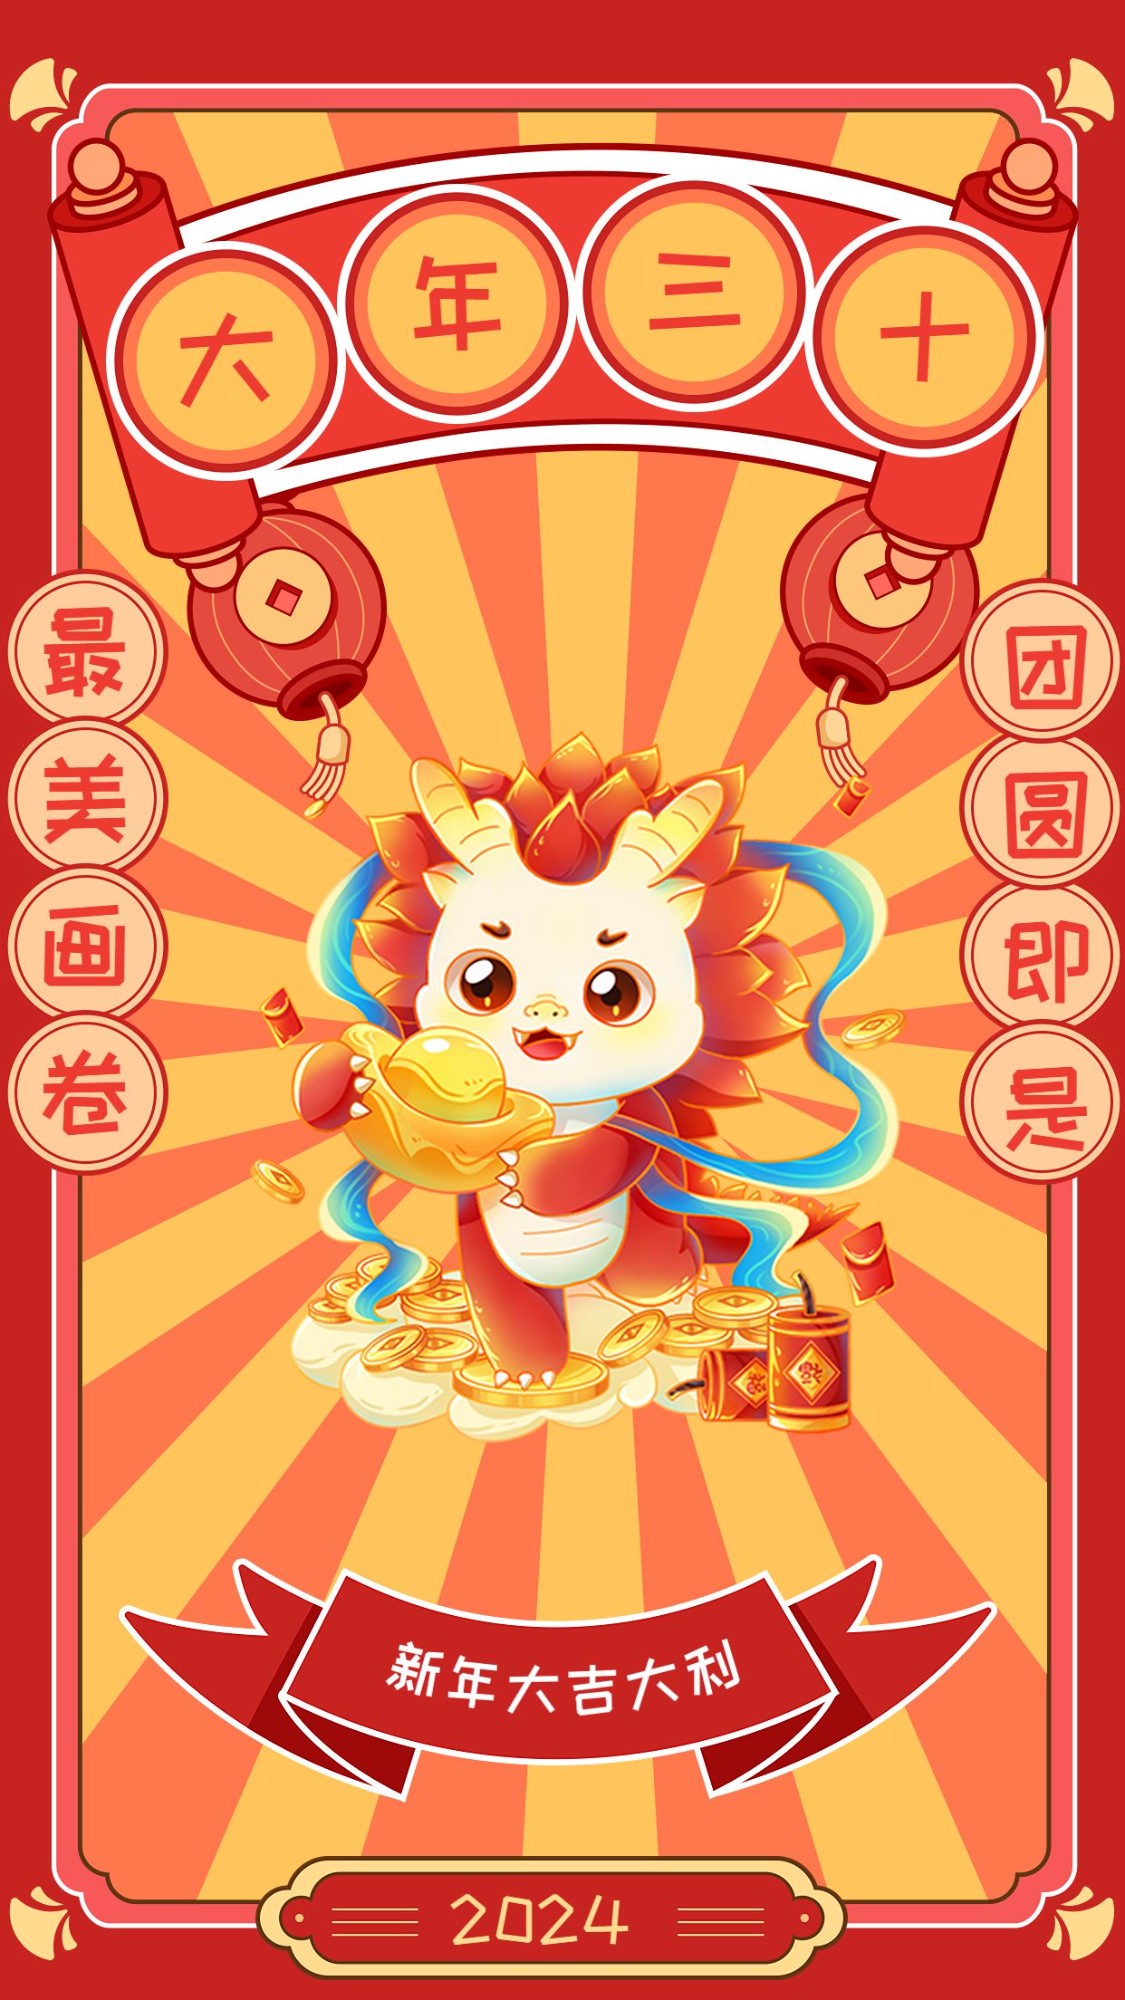 教育行业大年三十春节新年祝福插画套系手机海报